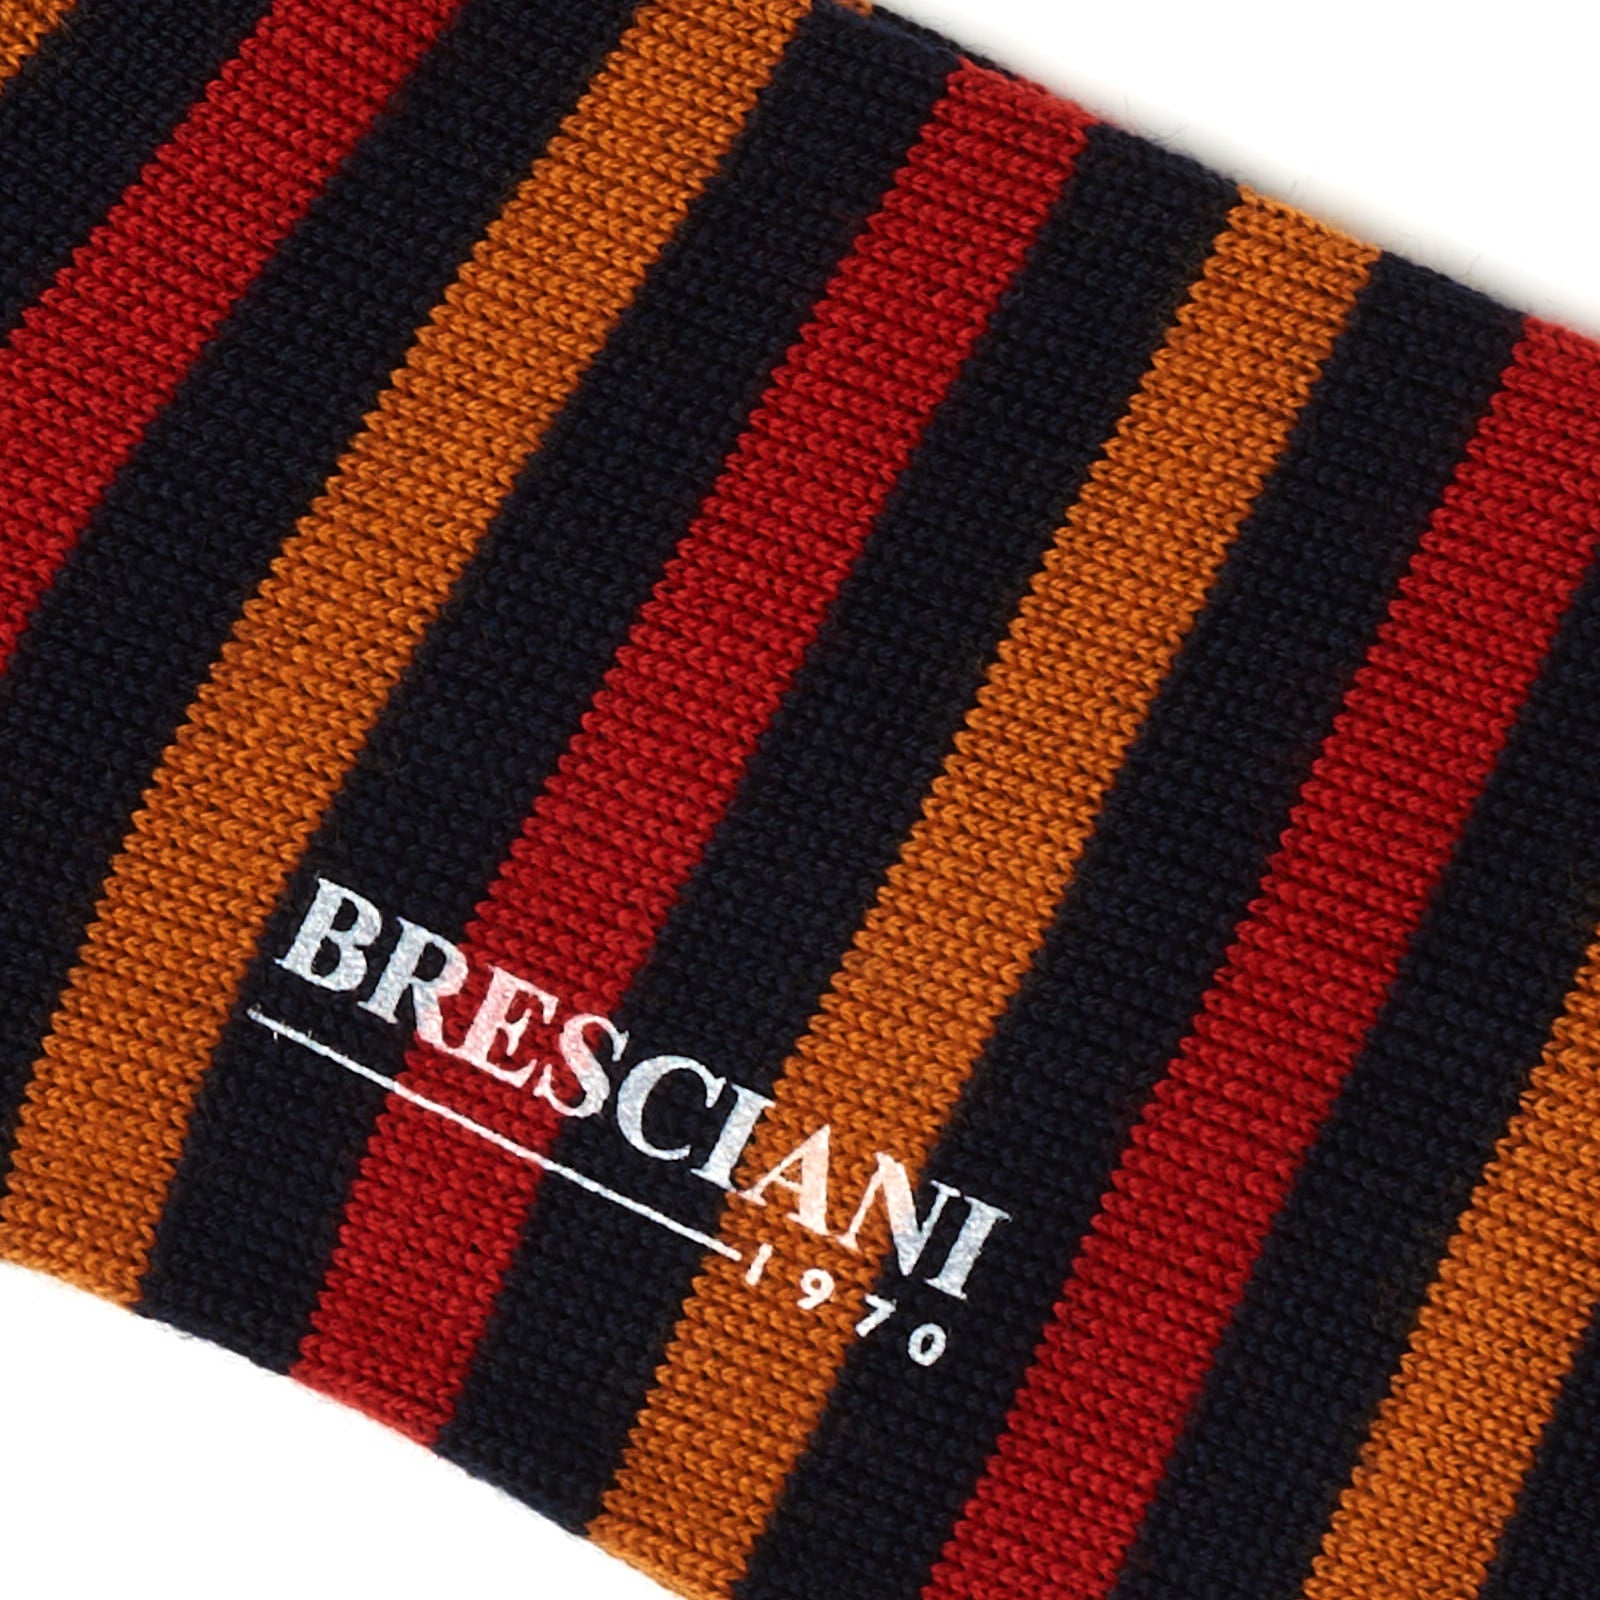 BRESCIANI Wool Balanced Striped Mid Calf Length Socks M-L BRESCIANI